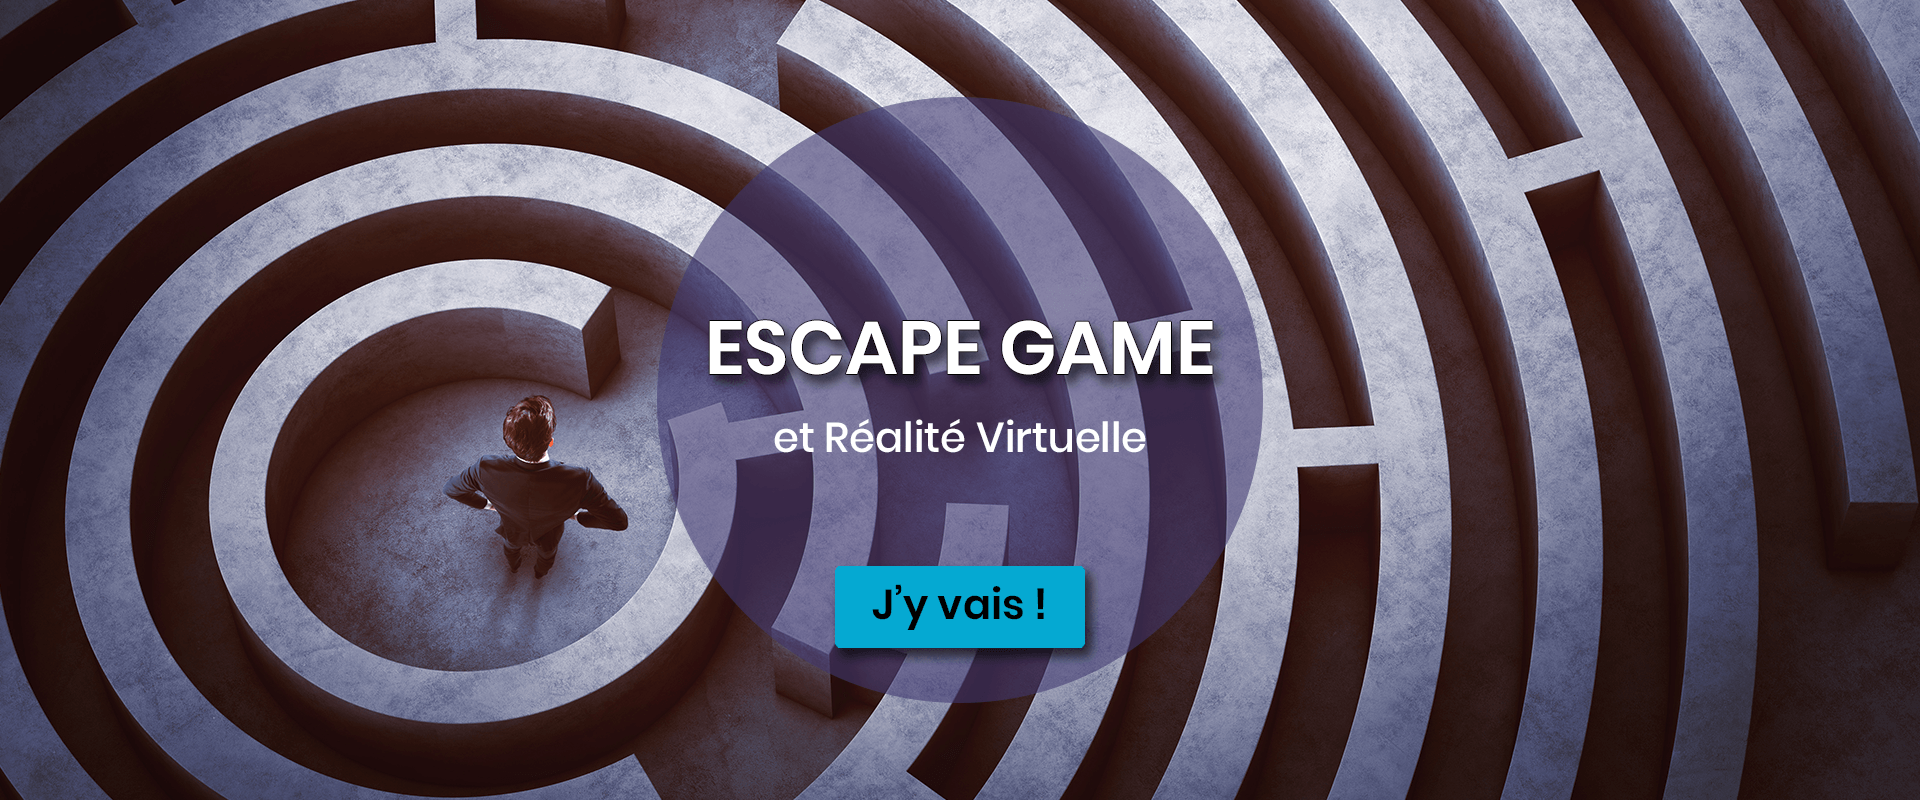 Escape Game et Réalité Virtuelle